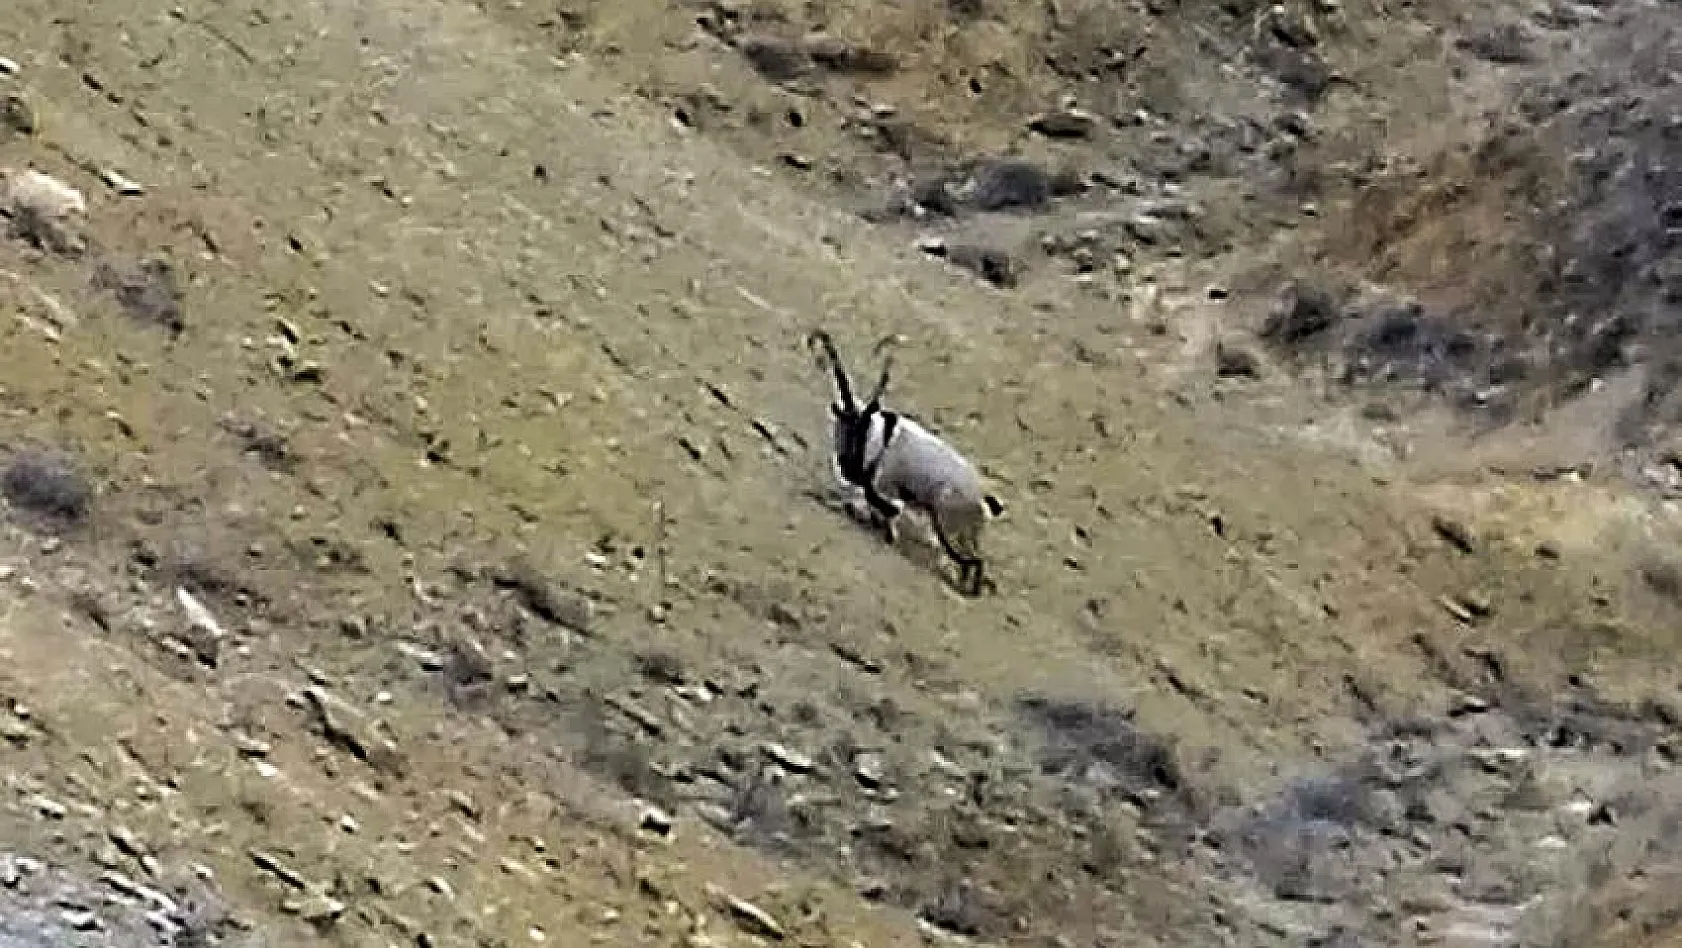 Darende'de yaban keçisi görüntülendi